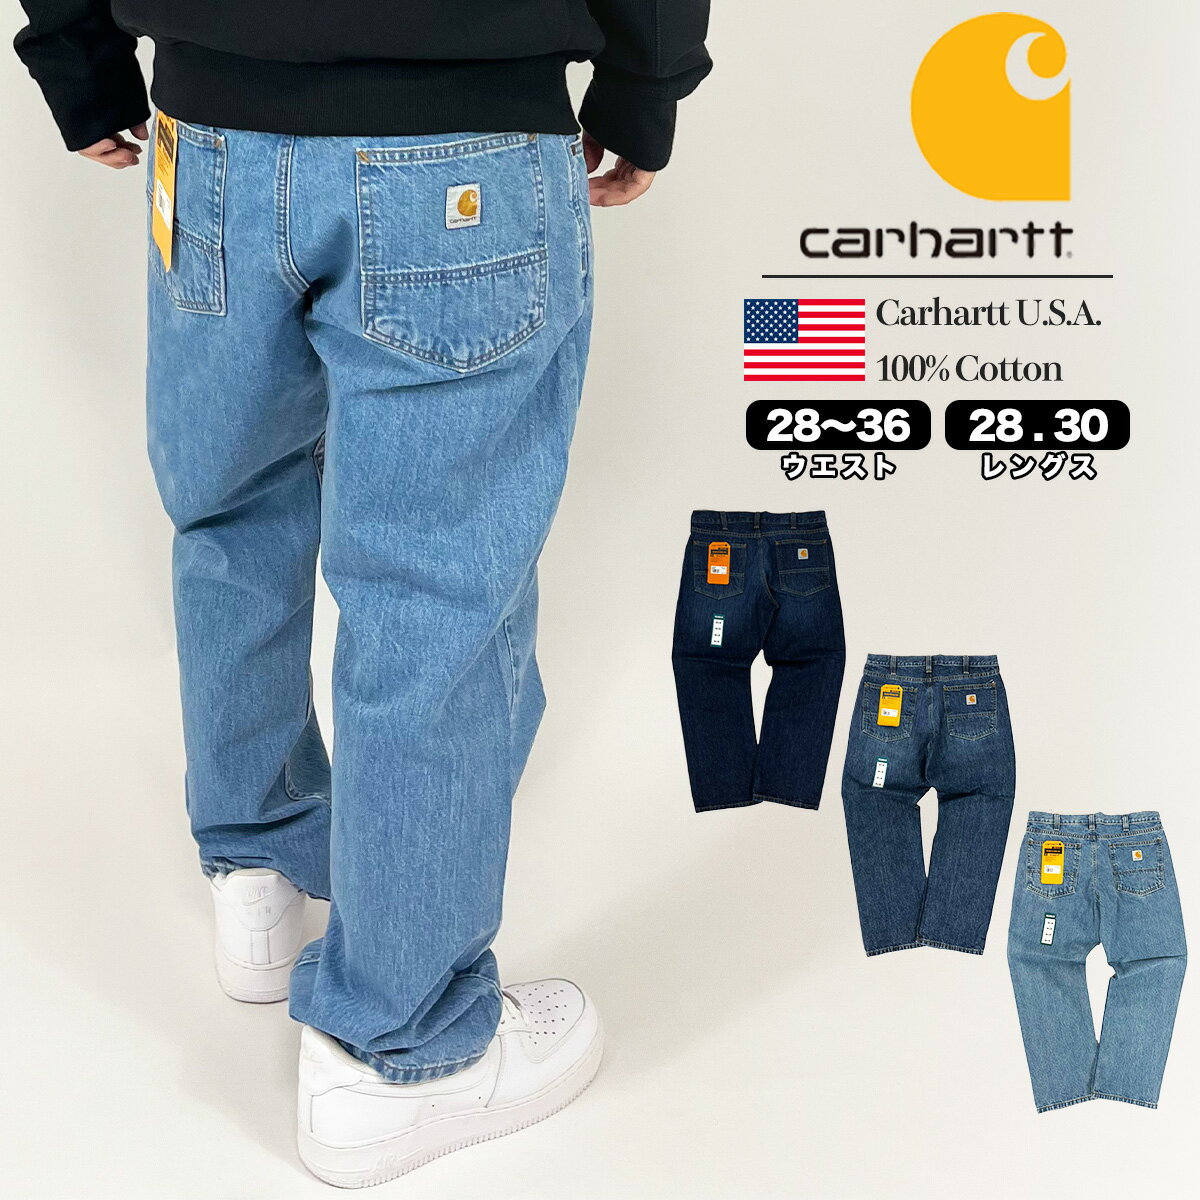 カーハート パンツ Carhartt 105119 リラックスフィット 5ポケット USサイズ デニム ジーンズ Relaxed Fit 5-Pocket Jean ワークパンツ メンズ レディース 正規品 BD5119 衣類 ユ00572